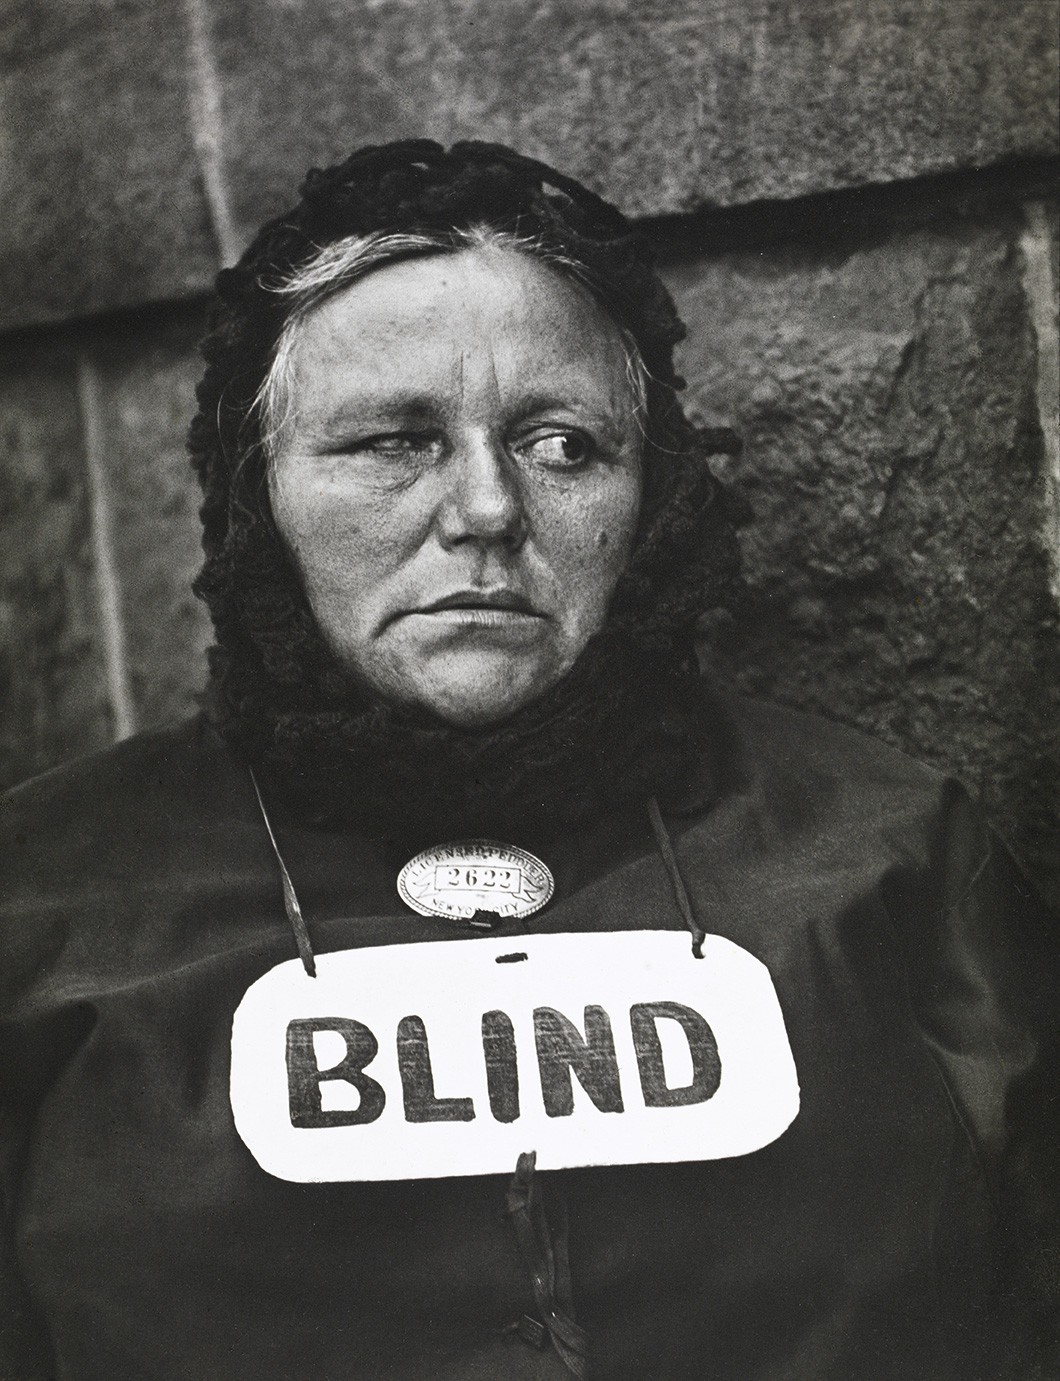 <p><em>Mujer ciega, Nueva York (</em><em>Blind Woman, New York)<br />
</em>1916<br />
Plata en gelatina<br />
Colecciones Fundación MAPFRE<br />
© Aperture Foundation Inc., Paul Strand Archive</p>
